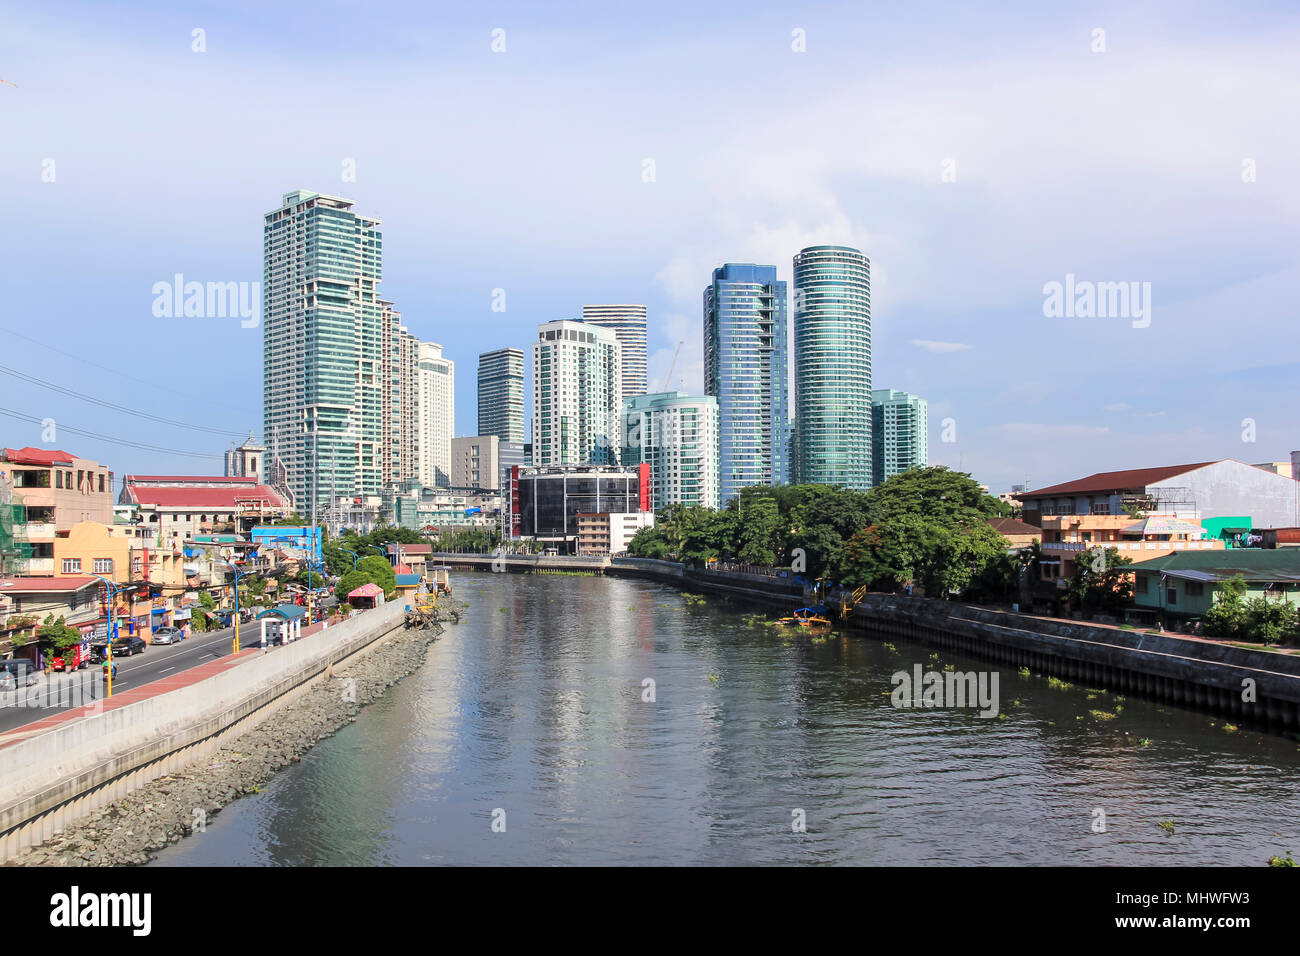 Manille - Le 12 juin : La rivière pasig à makati en passant par des tours d'immeubles en copropriété de Rockwell ème arrondissement le 12 juin 2014 à Manille. Le kilomètre 25 Pa Banque D'Images